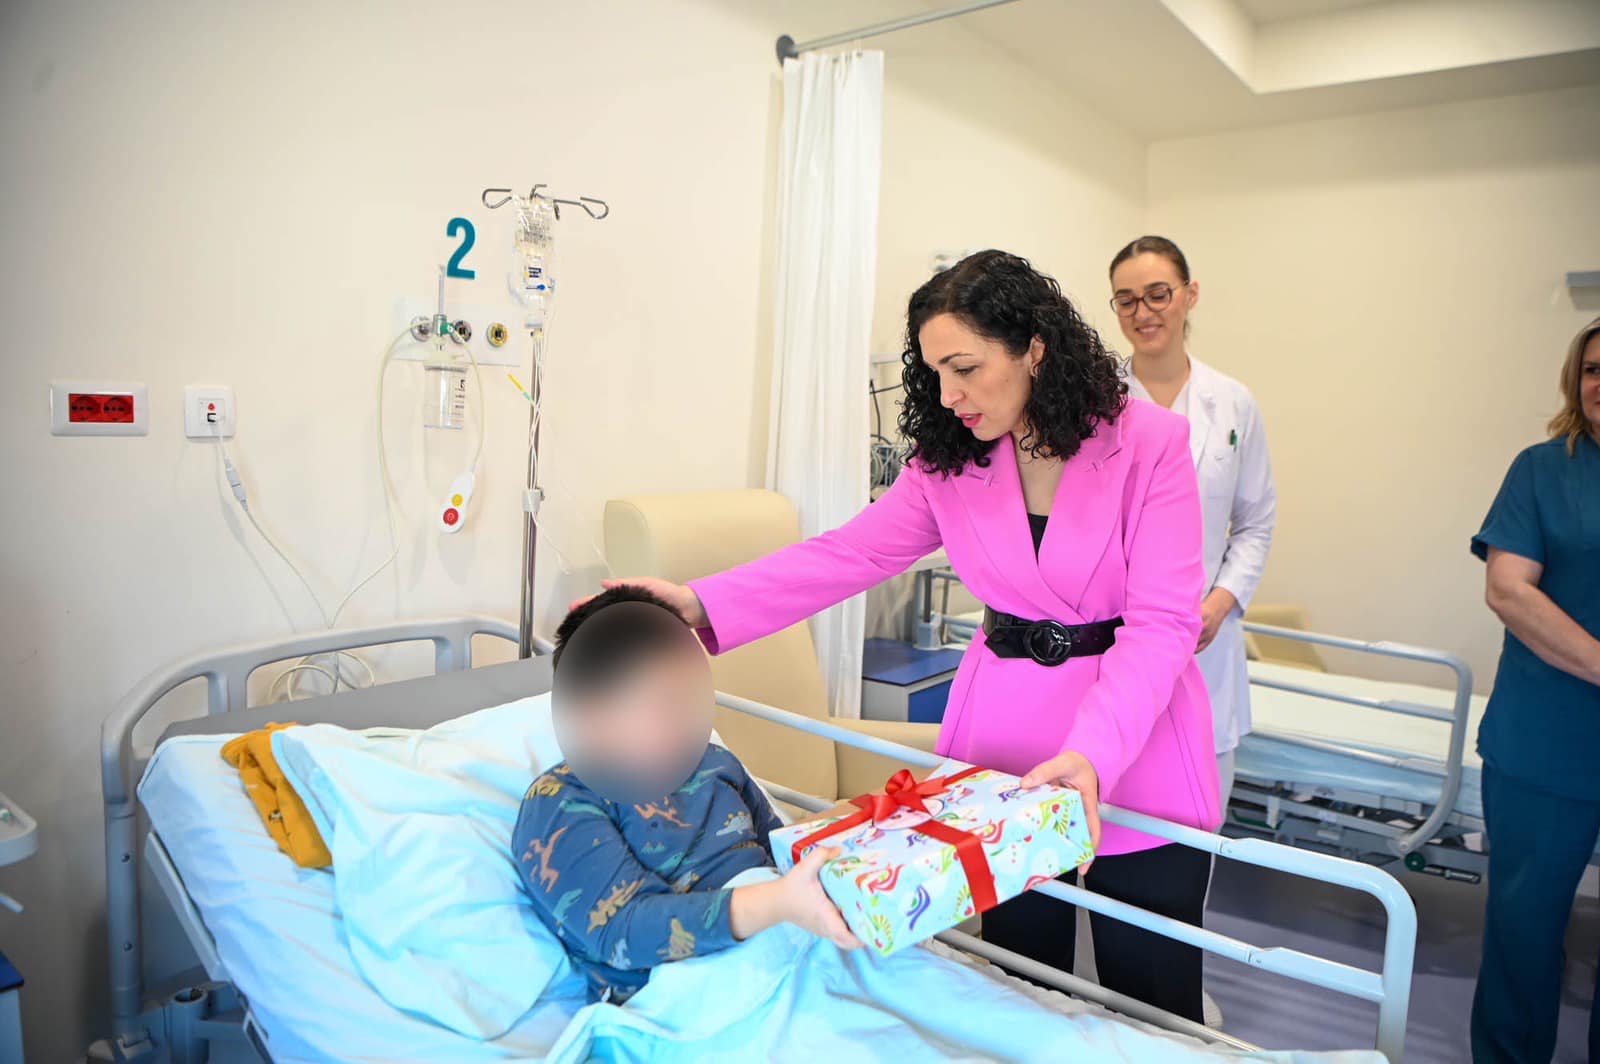 Presidentja Osmani viziton më të vegjlit në Klinikën e Onkologjisë dhe Kirurgjisë së Fëmijëve